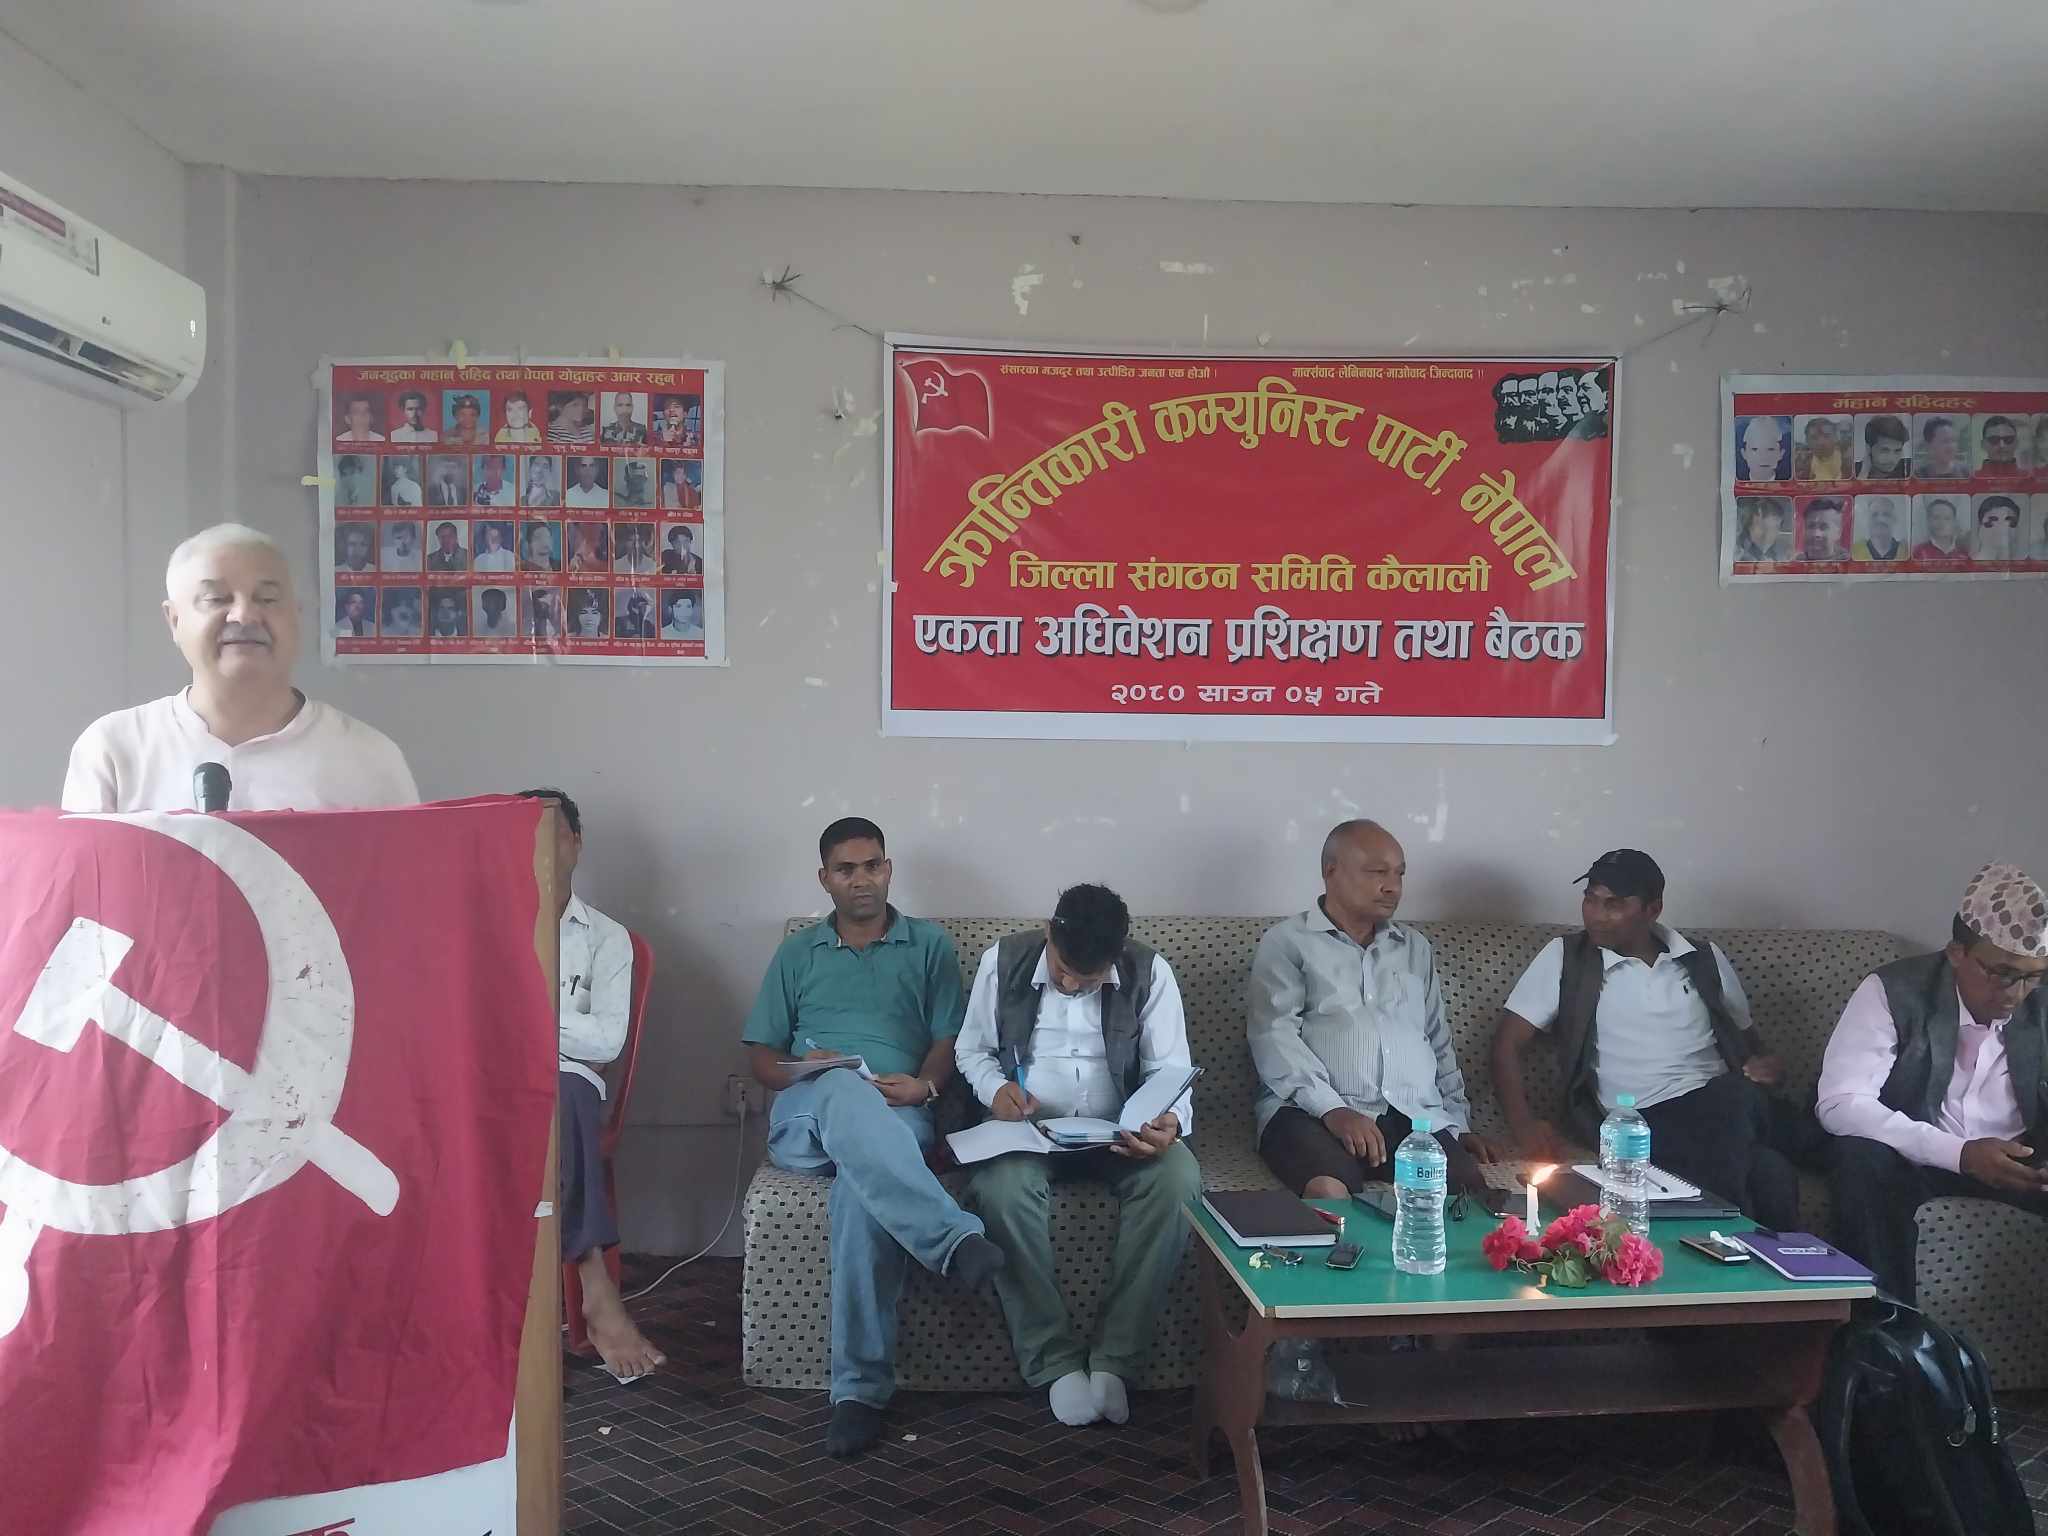 क्रान्तिकारी कम्युनिस्ट पार्टी, नेपाल कैलालीको जिल्ला एकता अधिवशेन तथा बैठक सम्पन